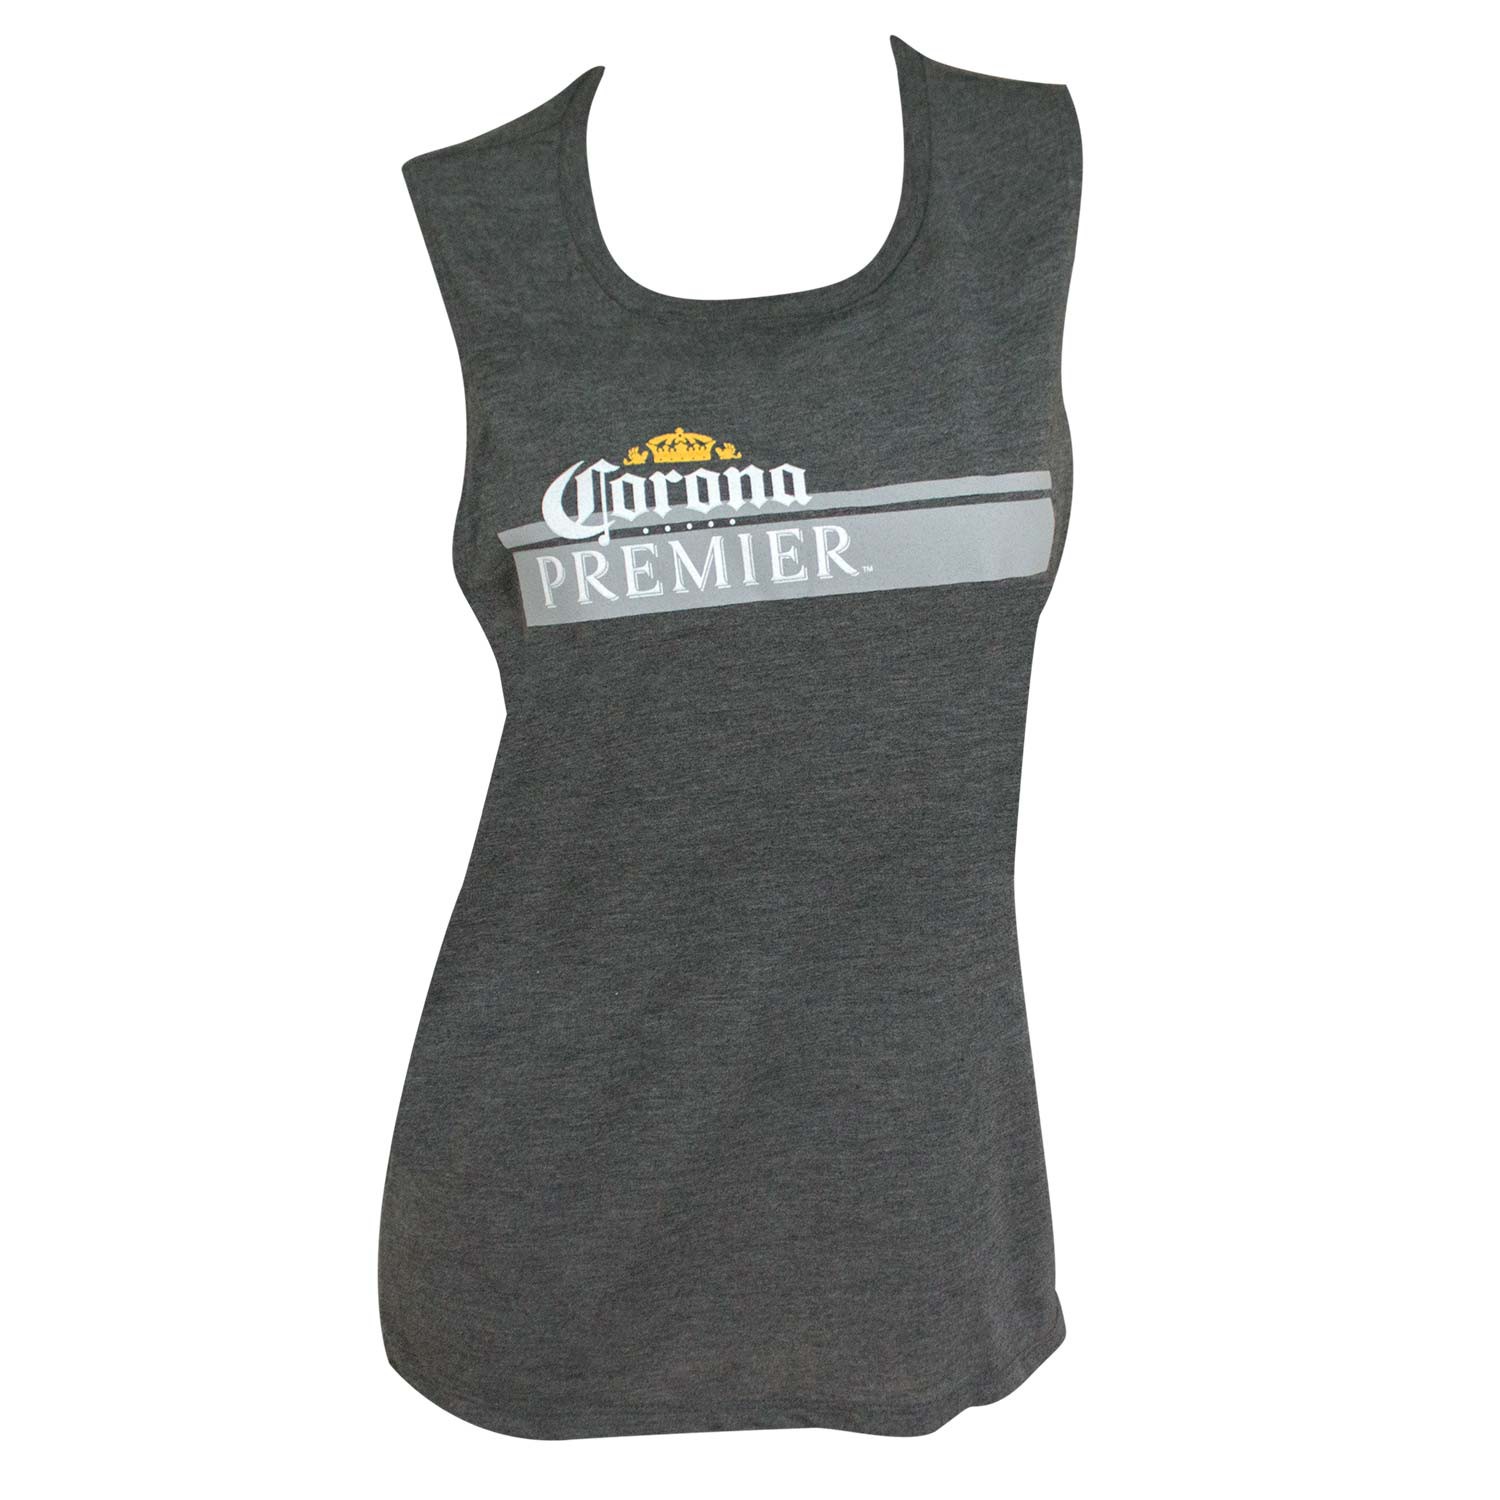 Corona Premier Stripe Logo Women's Gray Tank Top